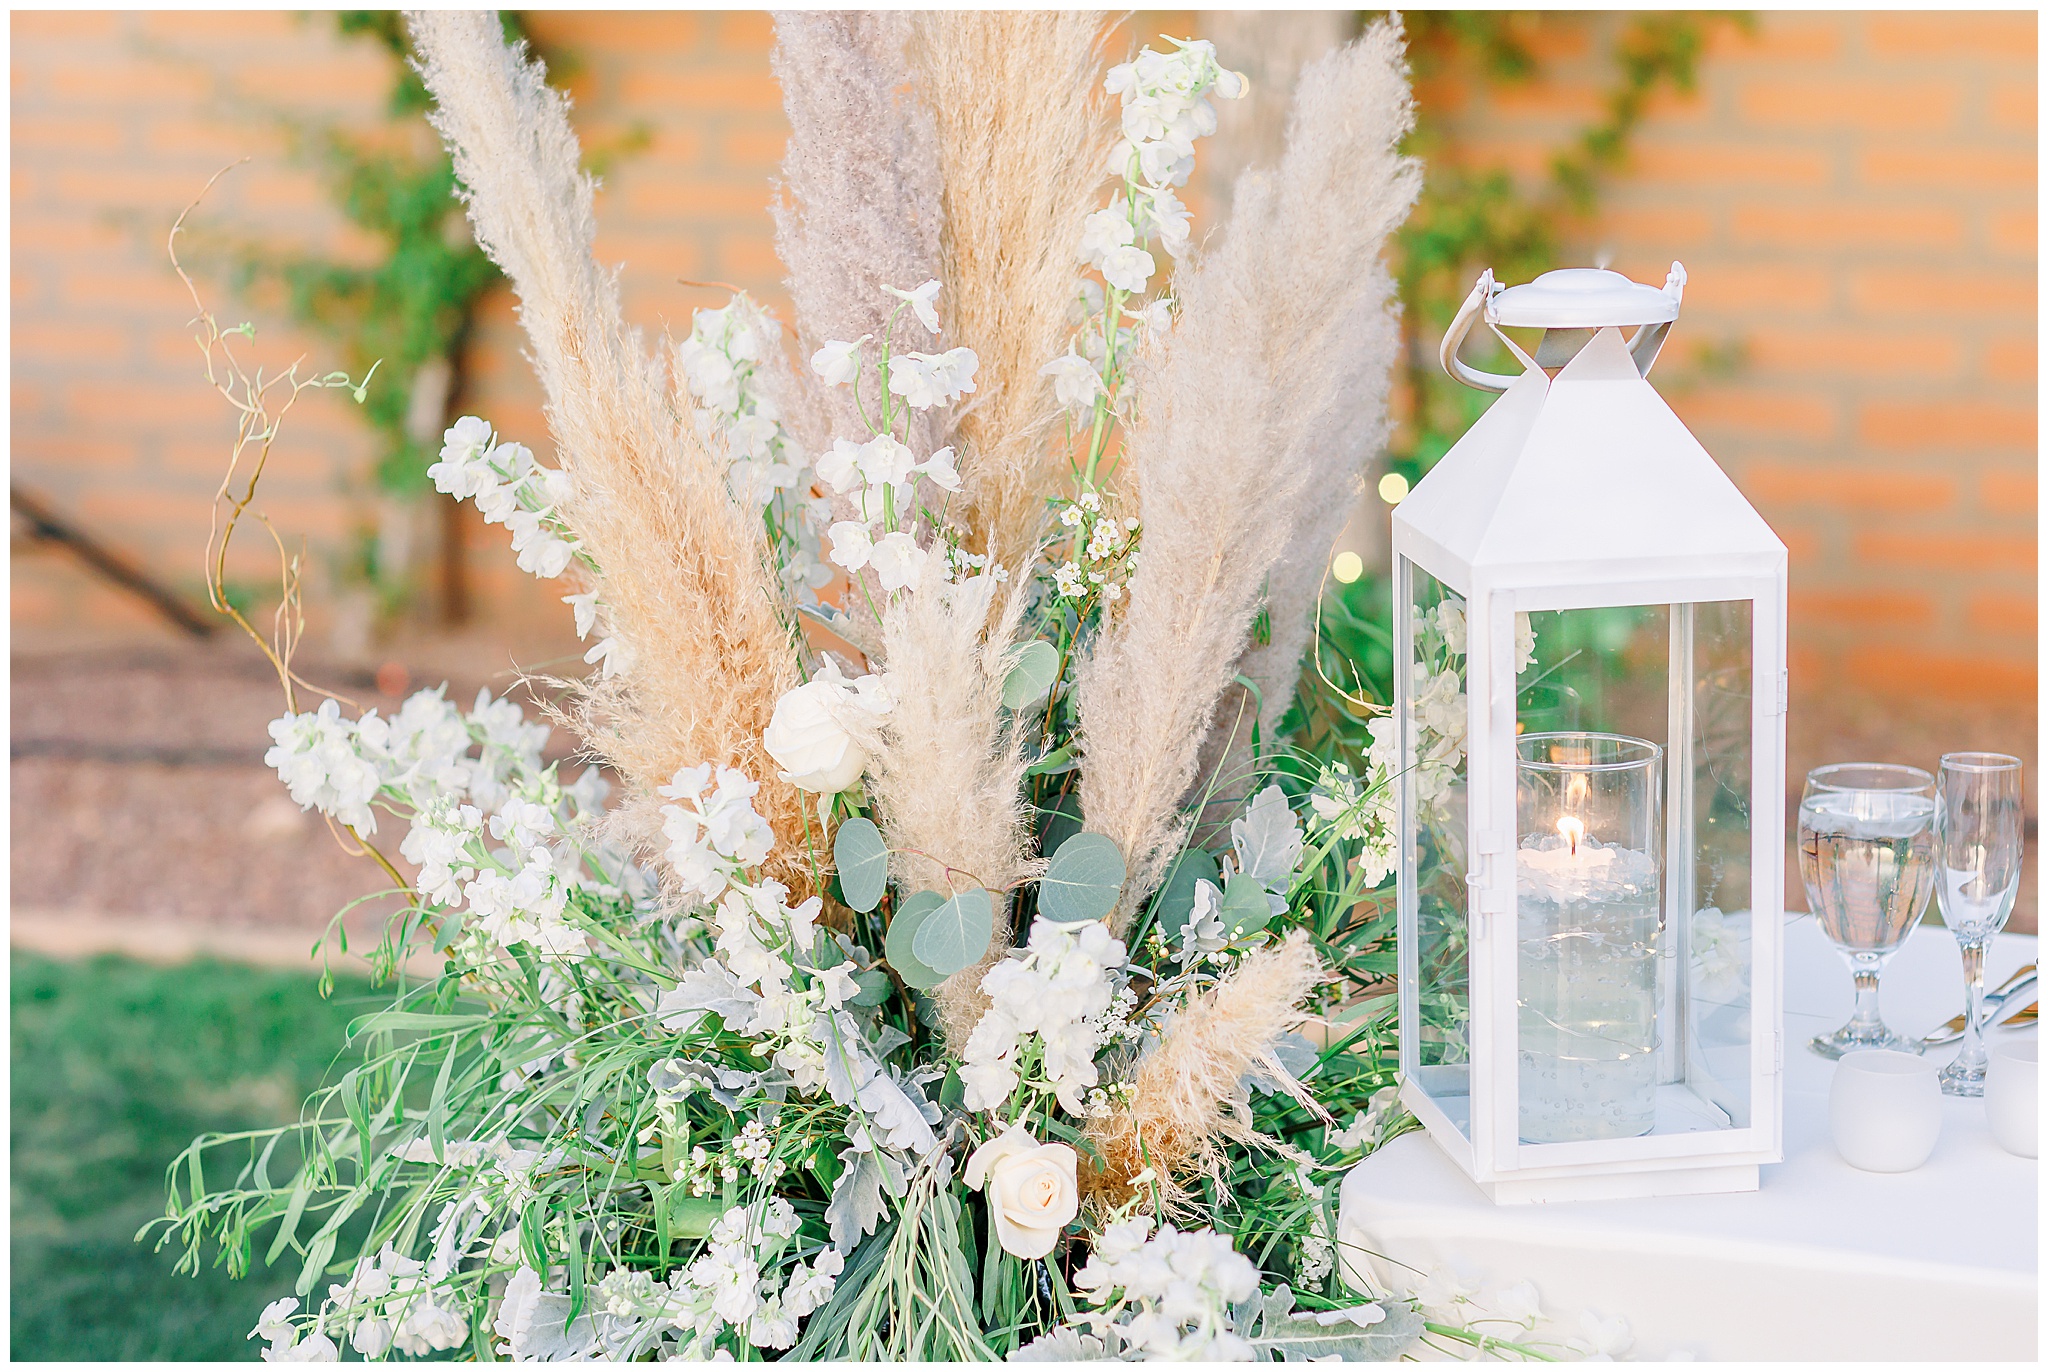 Pompous Grass, Eucalyptus, White Roses arrangement, white lantern